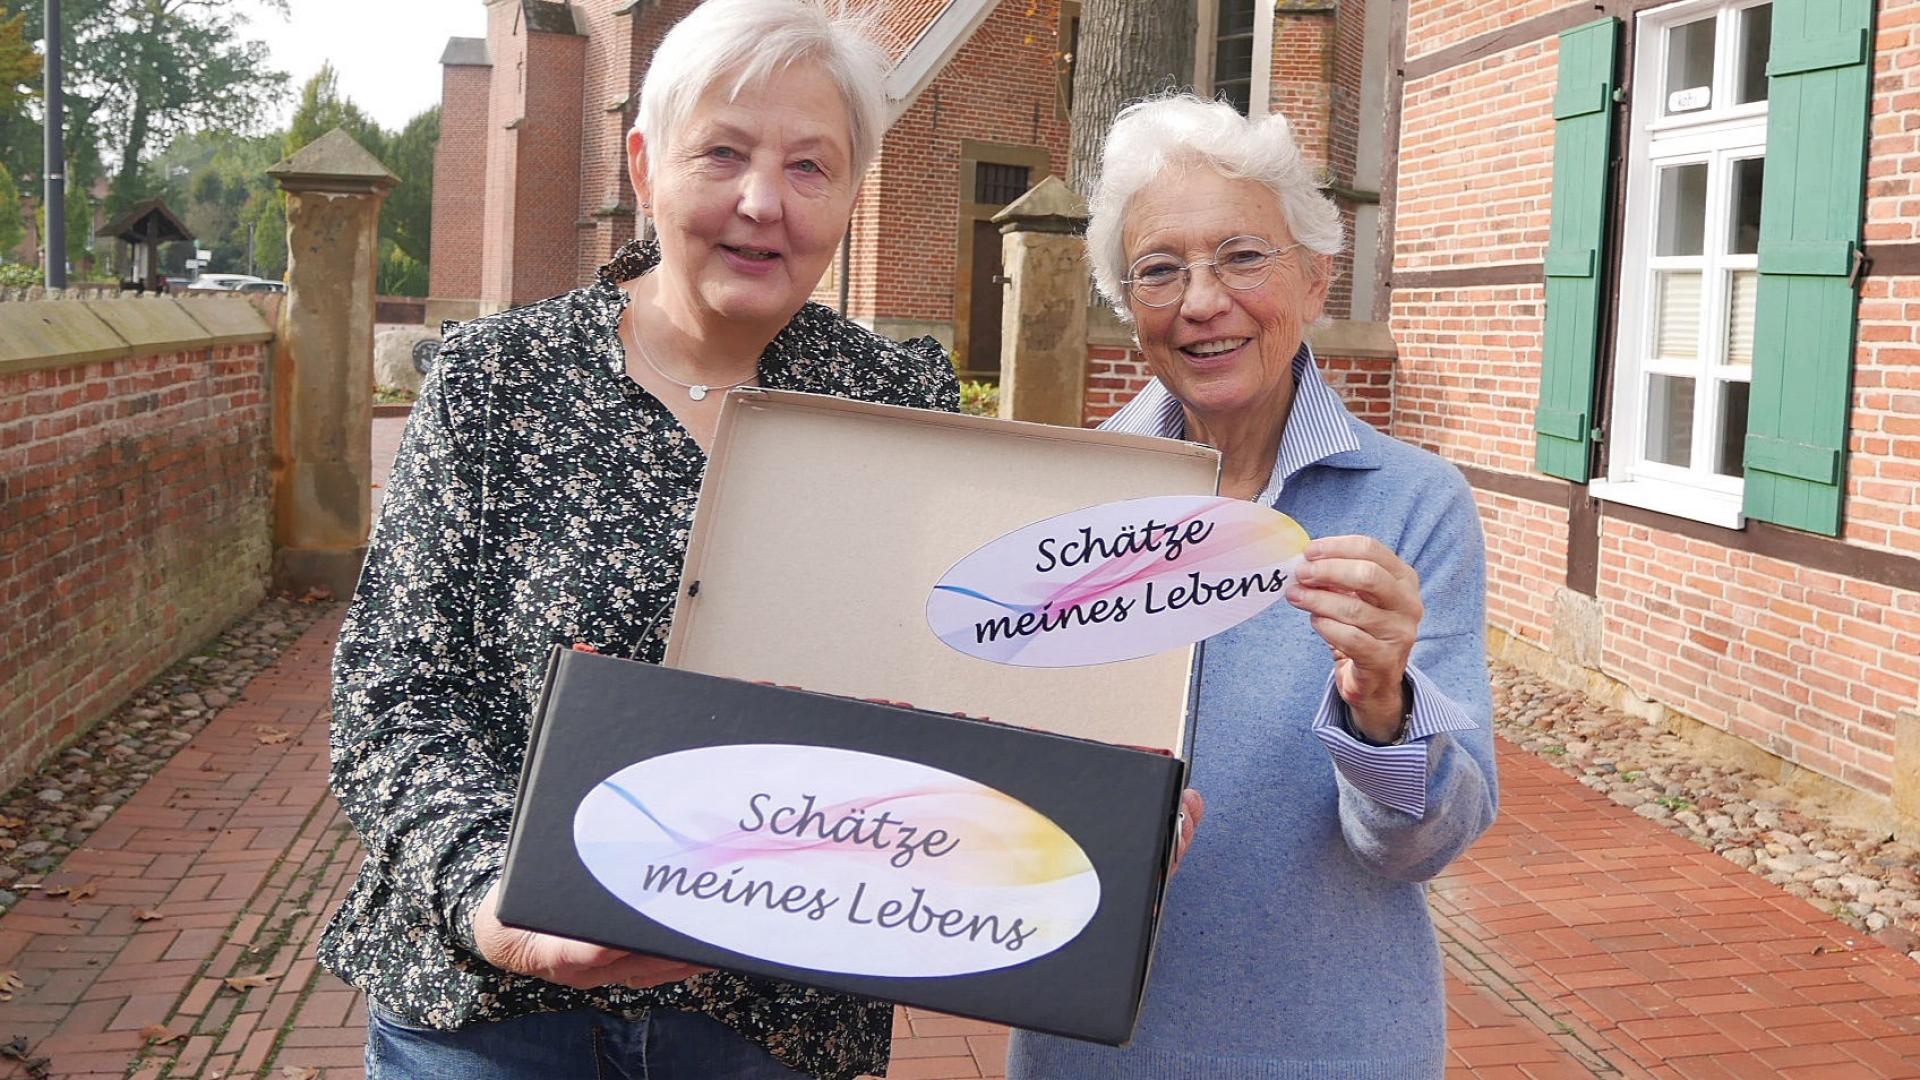 Zwei Frauen zeigen eine Schachtel mit der Aufschrift "Schätze meines Lebens"